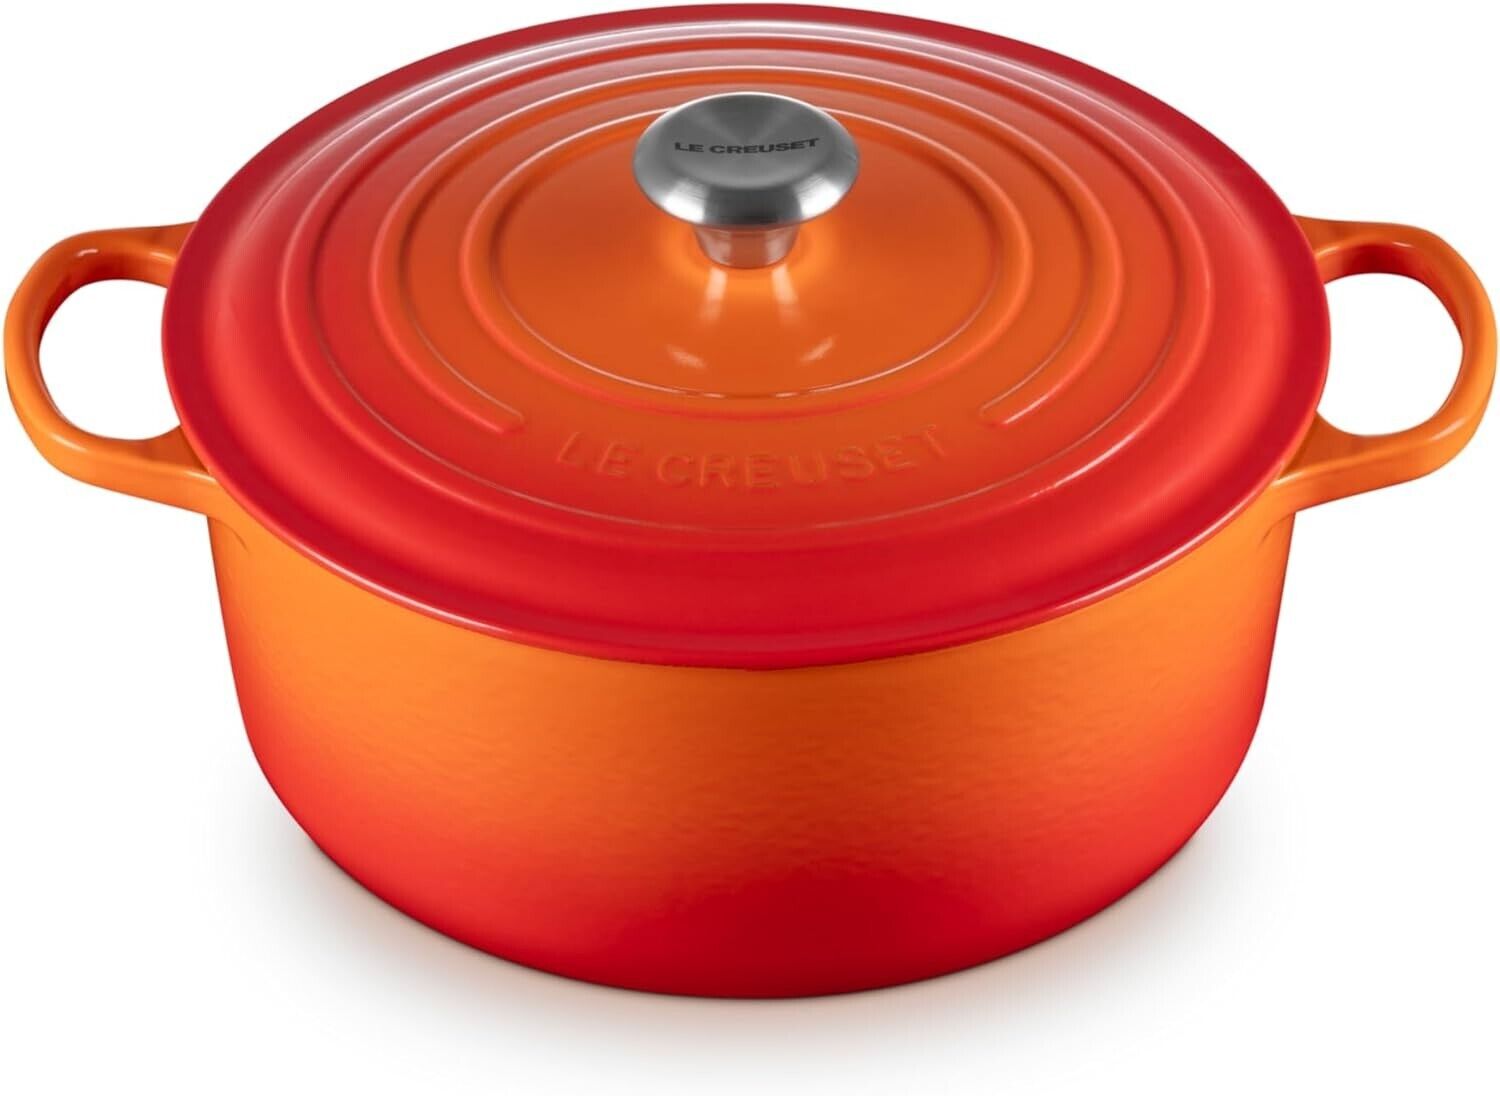 Le Creuset Signature Cast Iron 7.25 Quart Round Dutch Oven - Flame Orange